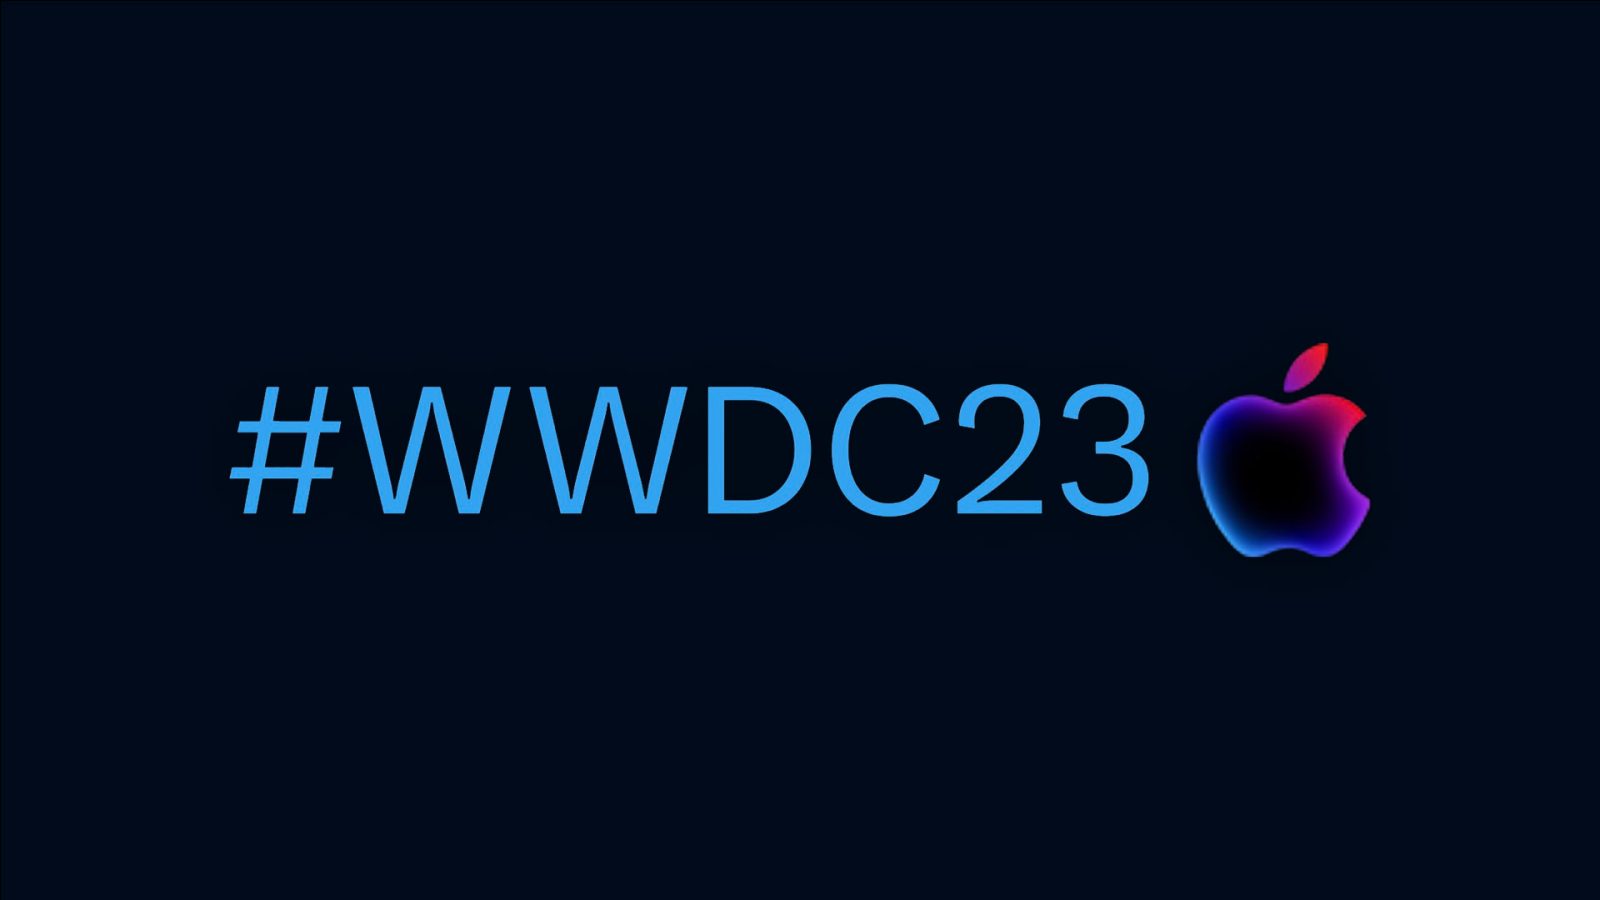 Хэшфлаг WWDC23 активен в Твиттере;  разработчики теперь могут присоединяться к действиям в Slack